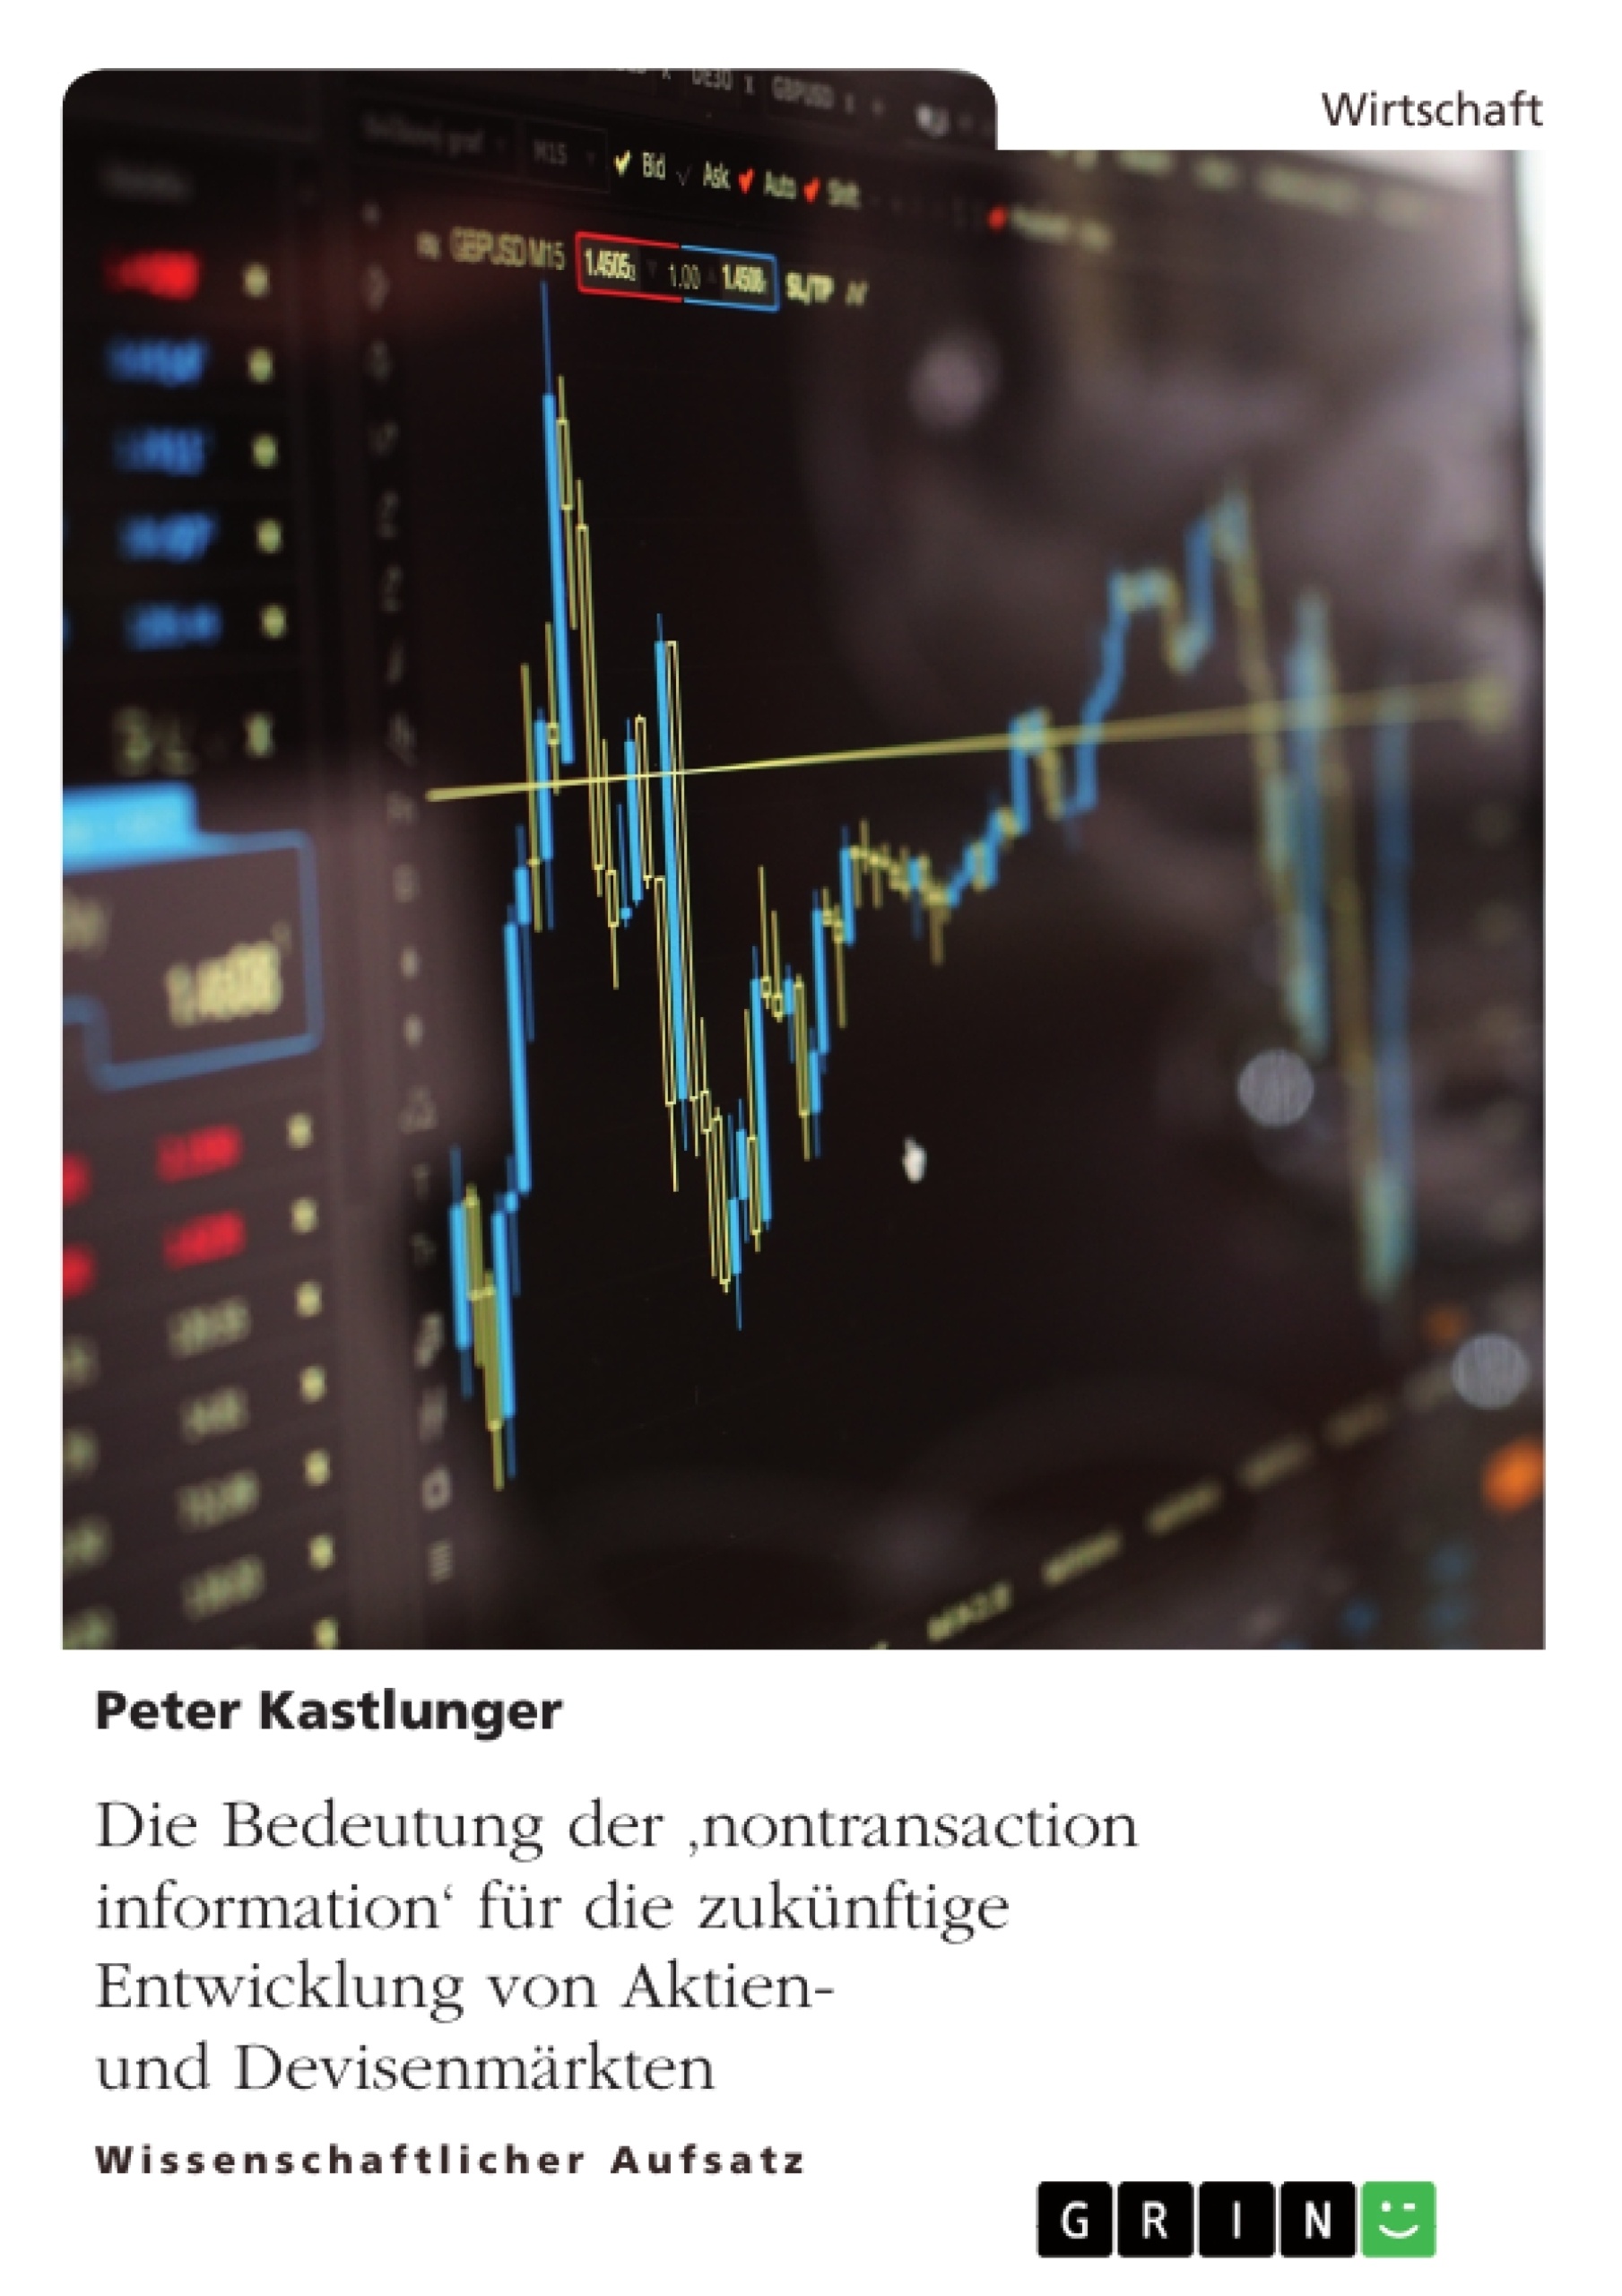 Title: Die Bedeutung der 'nontransaction information' für die zukünftige Entwicklung von Aktien- und Devisenmärkten